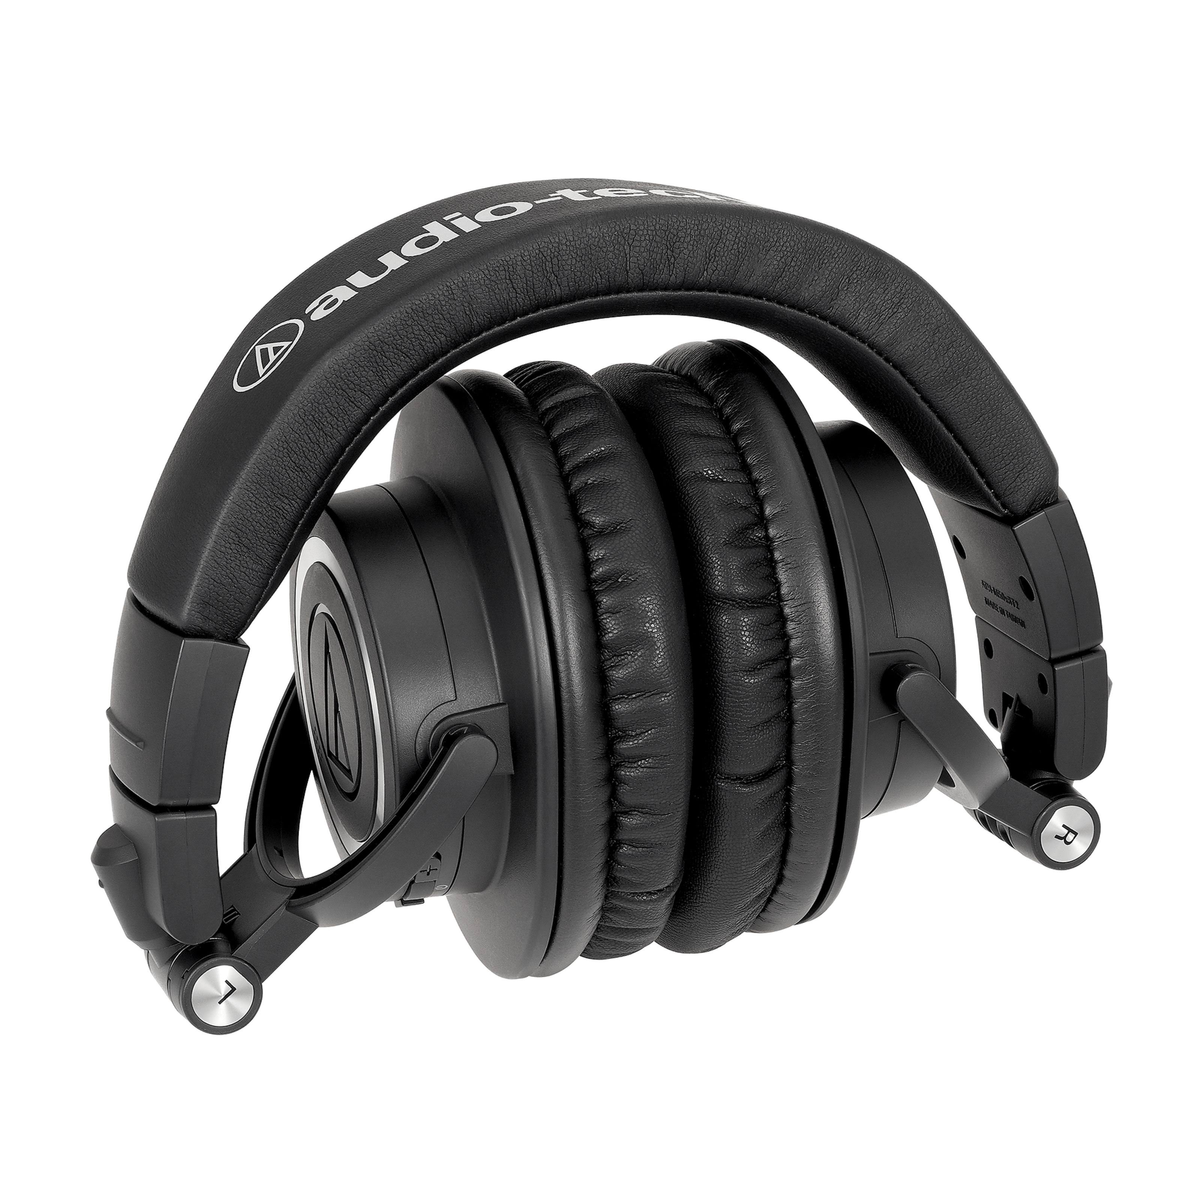 AUDIO-TECHNICA Wireless Headphones black, Bluetooth Headphones On-ear Bluetooth Black